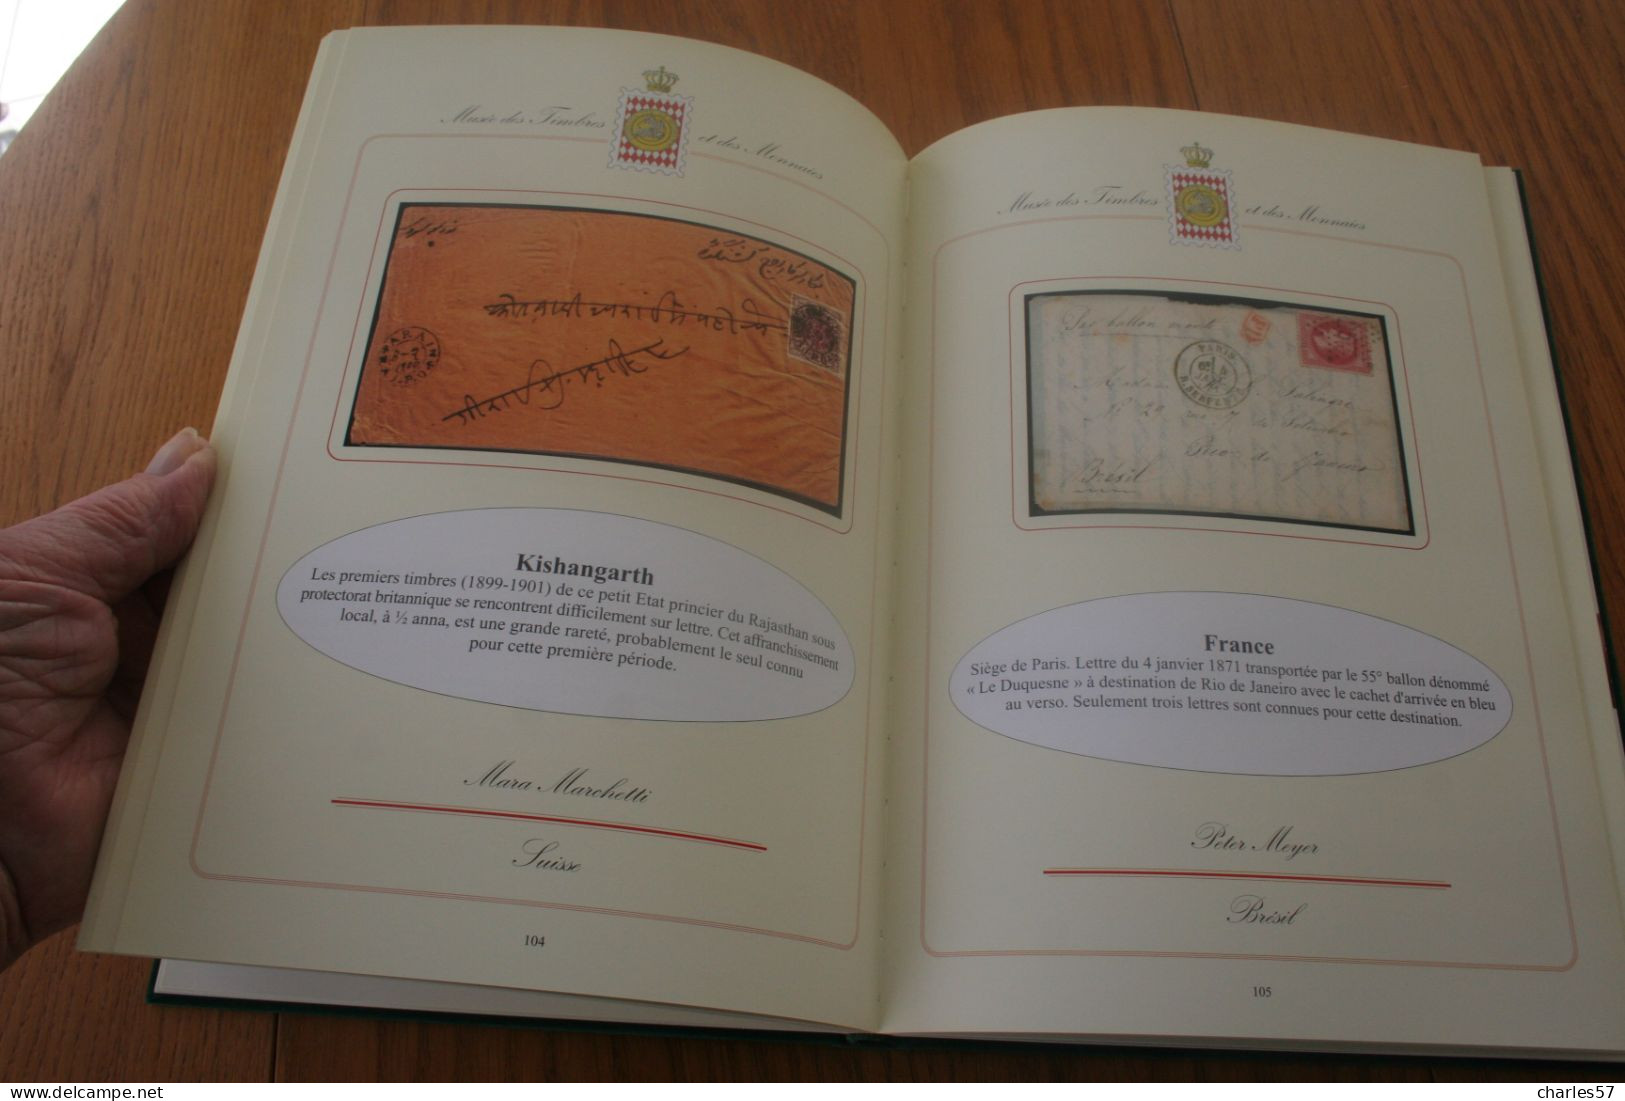 Catalogue :de l'exposition des 100 timbres et documents philatéliques parmi les plus rares du monde, 160 pages